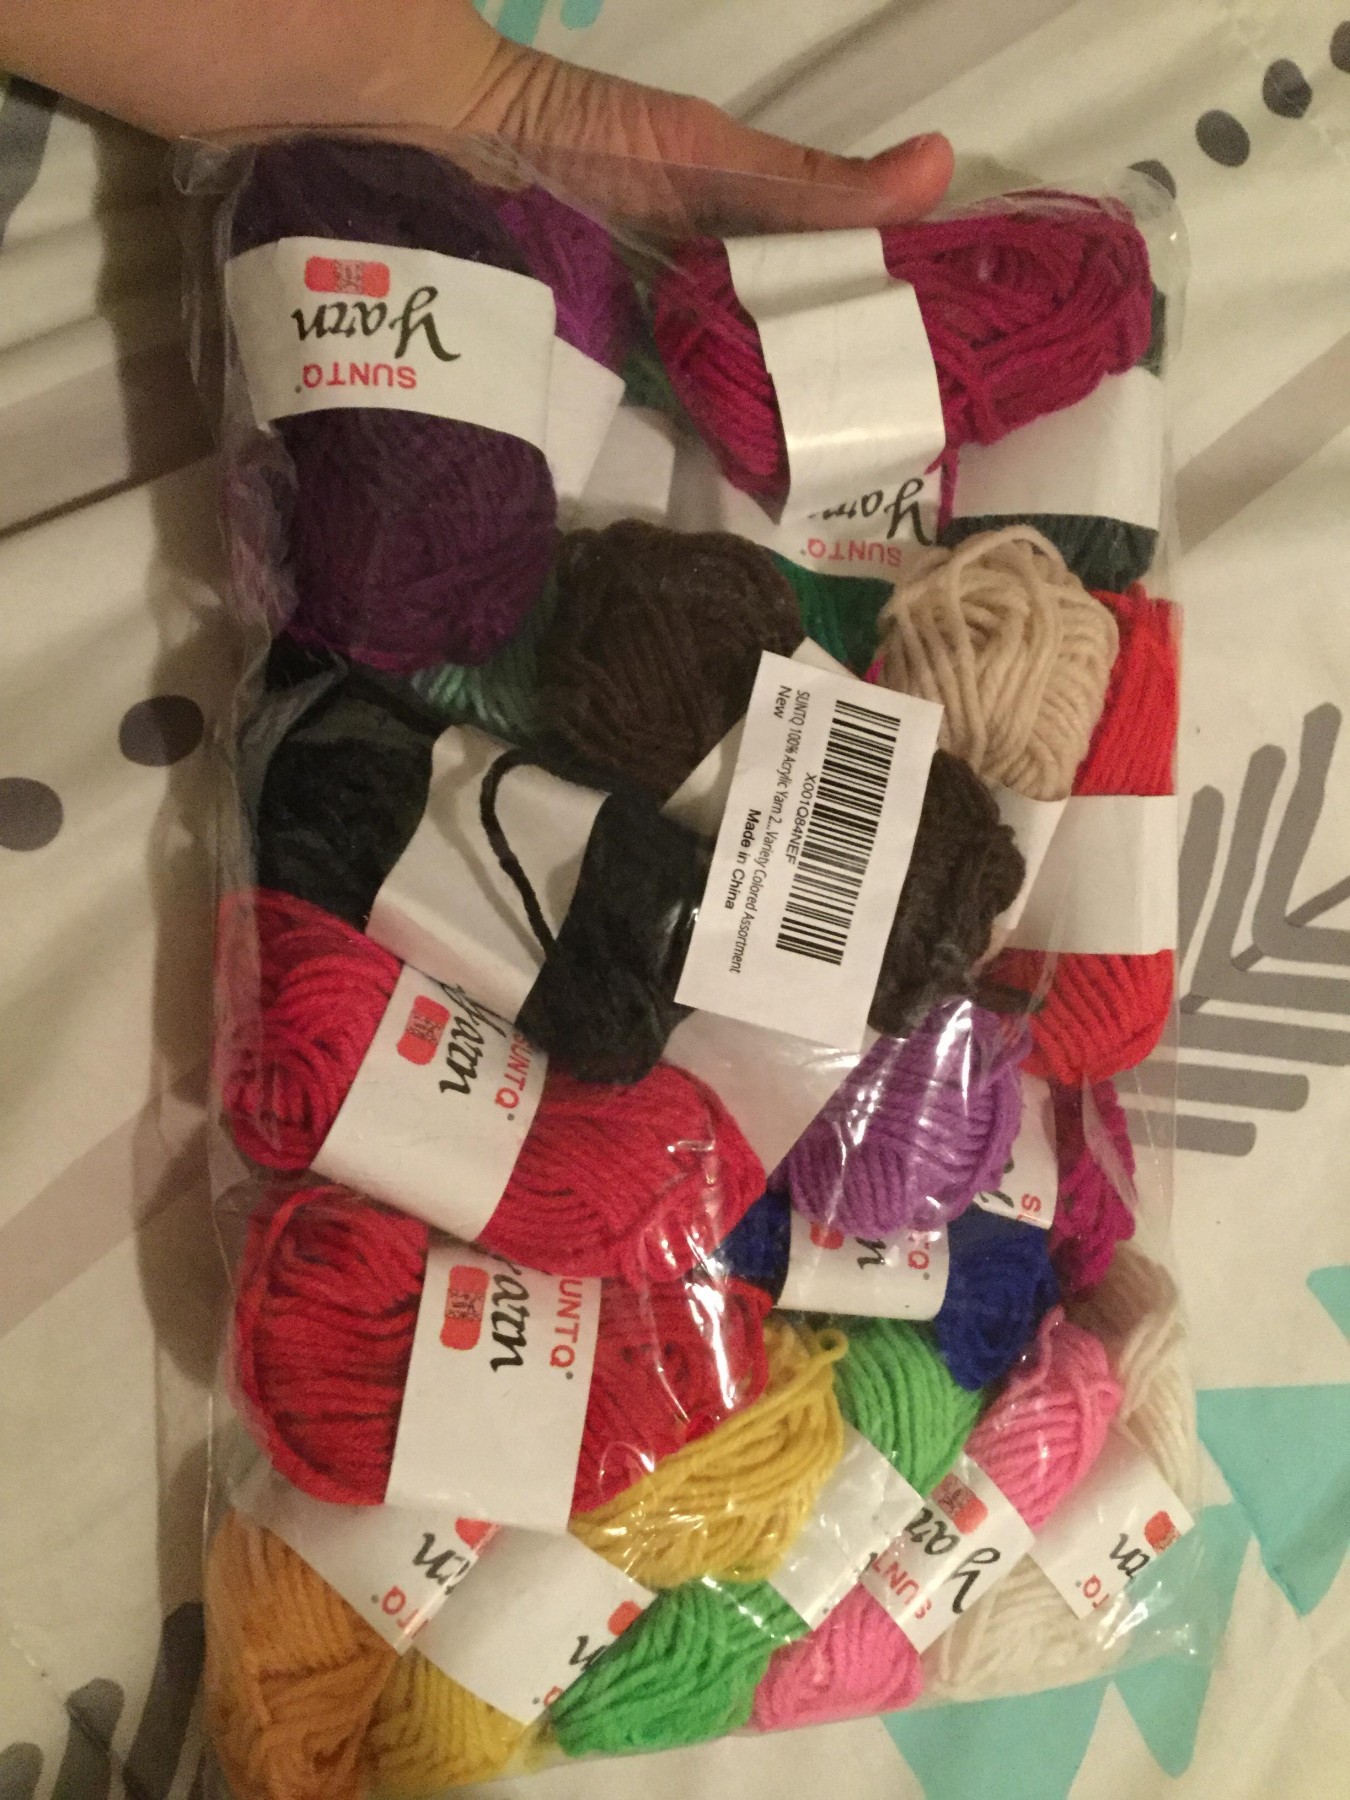 Fun starter pack of yarn